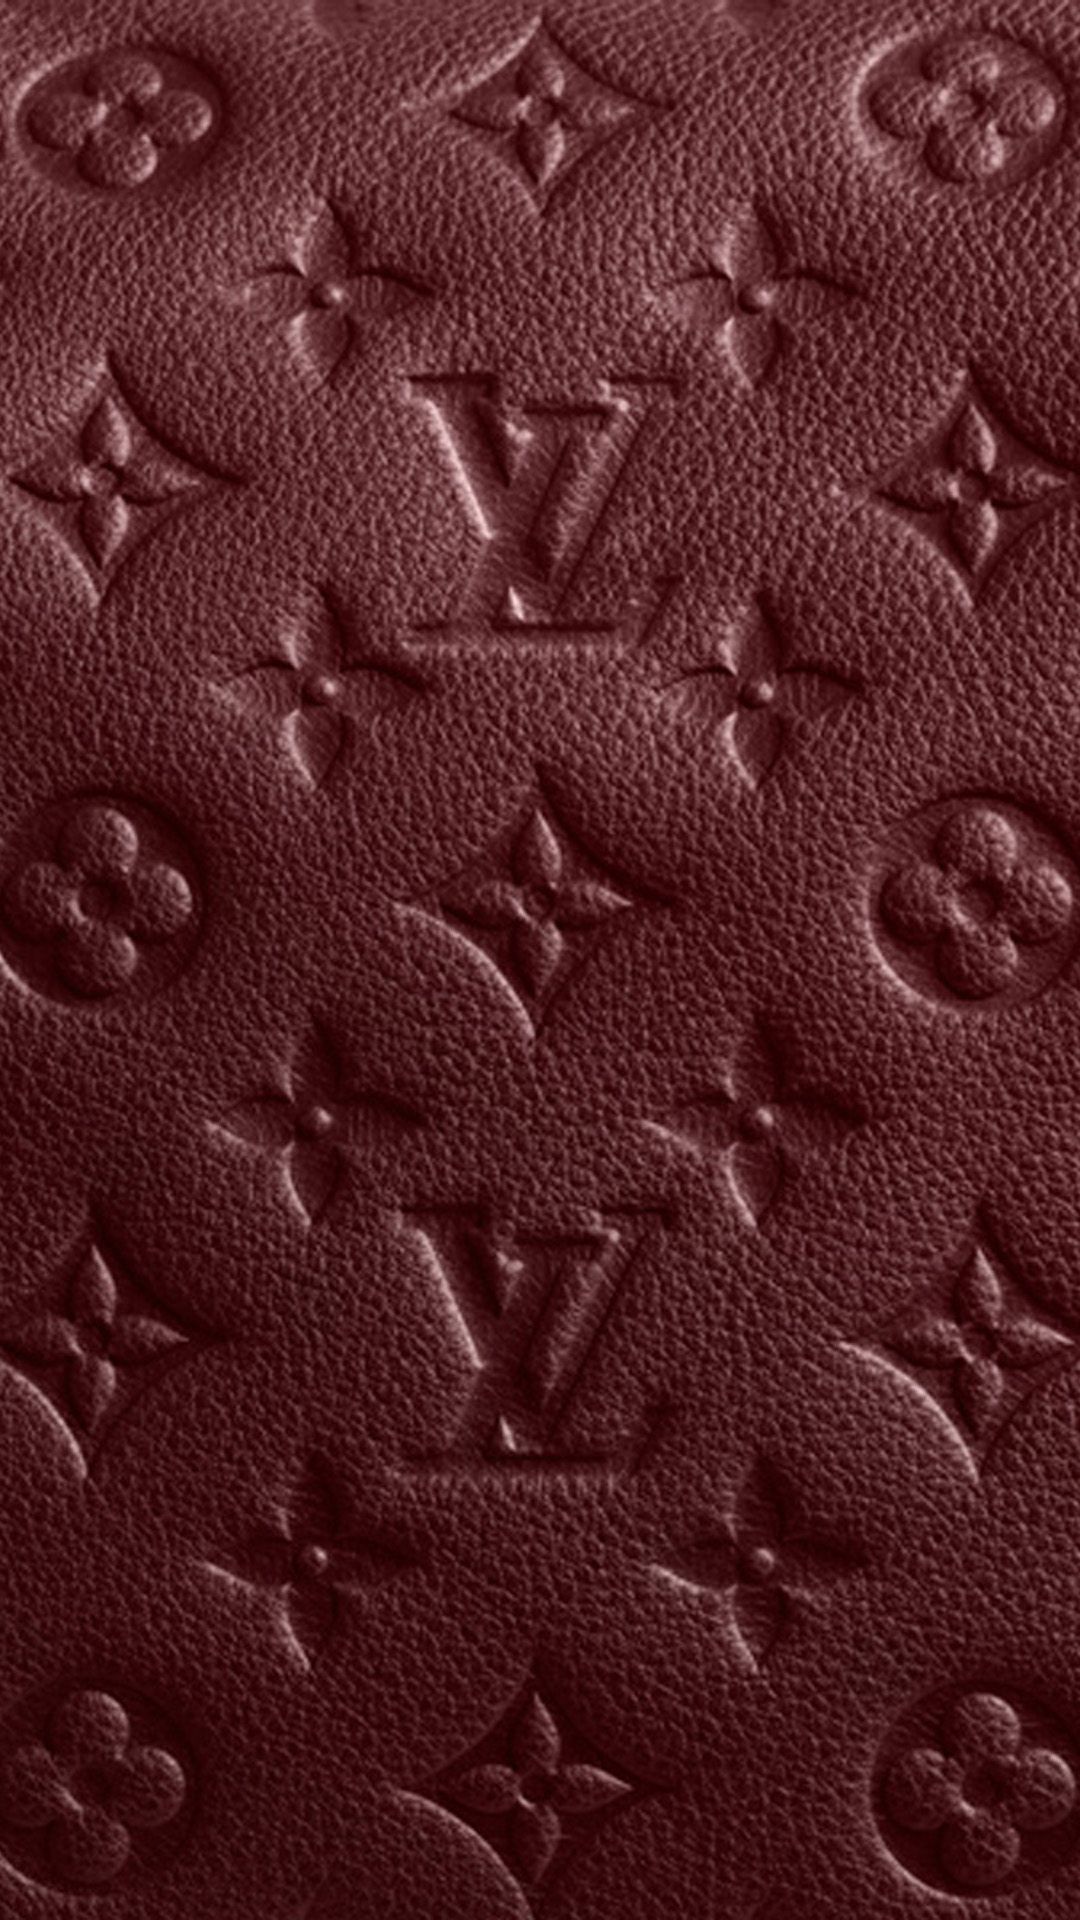 Burgundy Iphone 6 Wallpaper Fond D écran Louis Vuitton